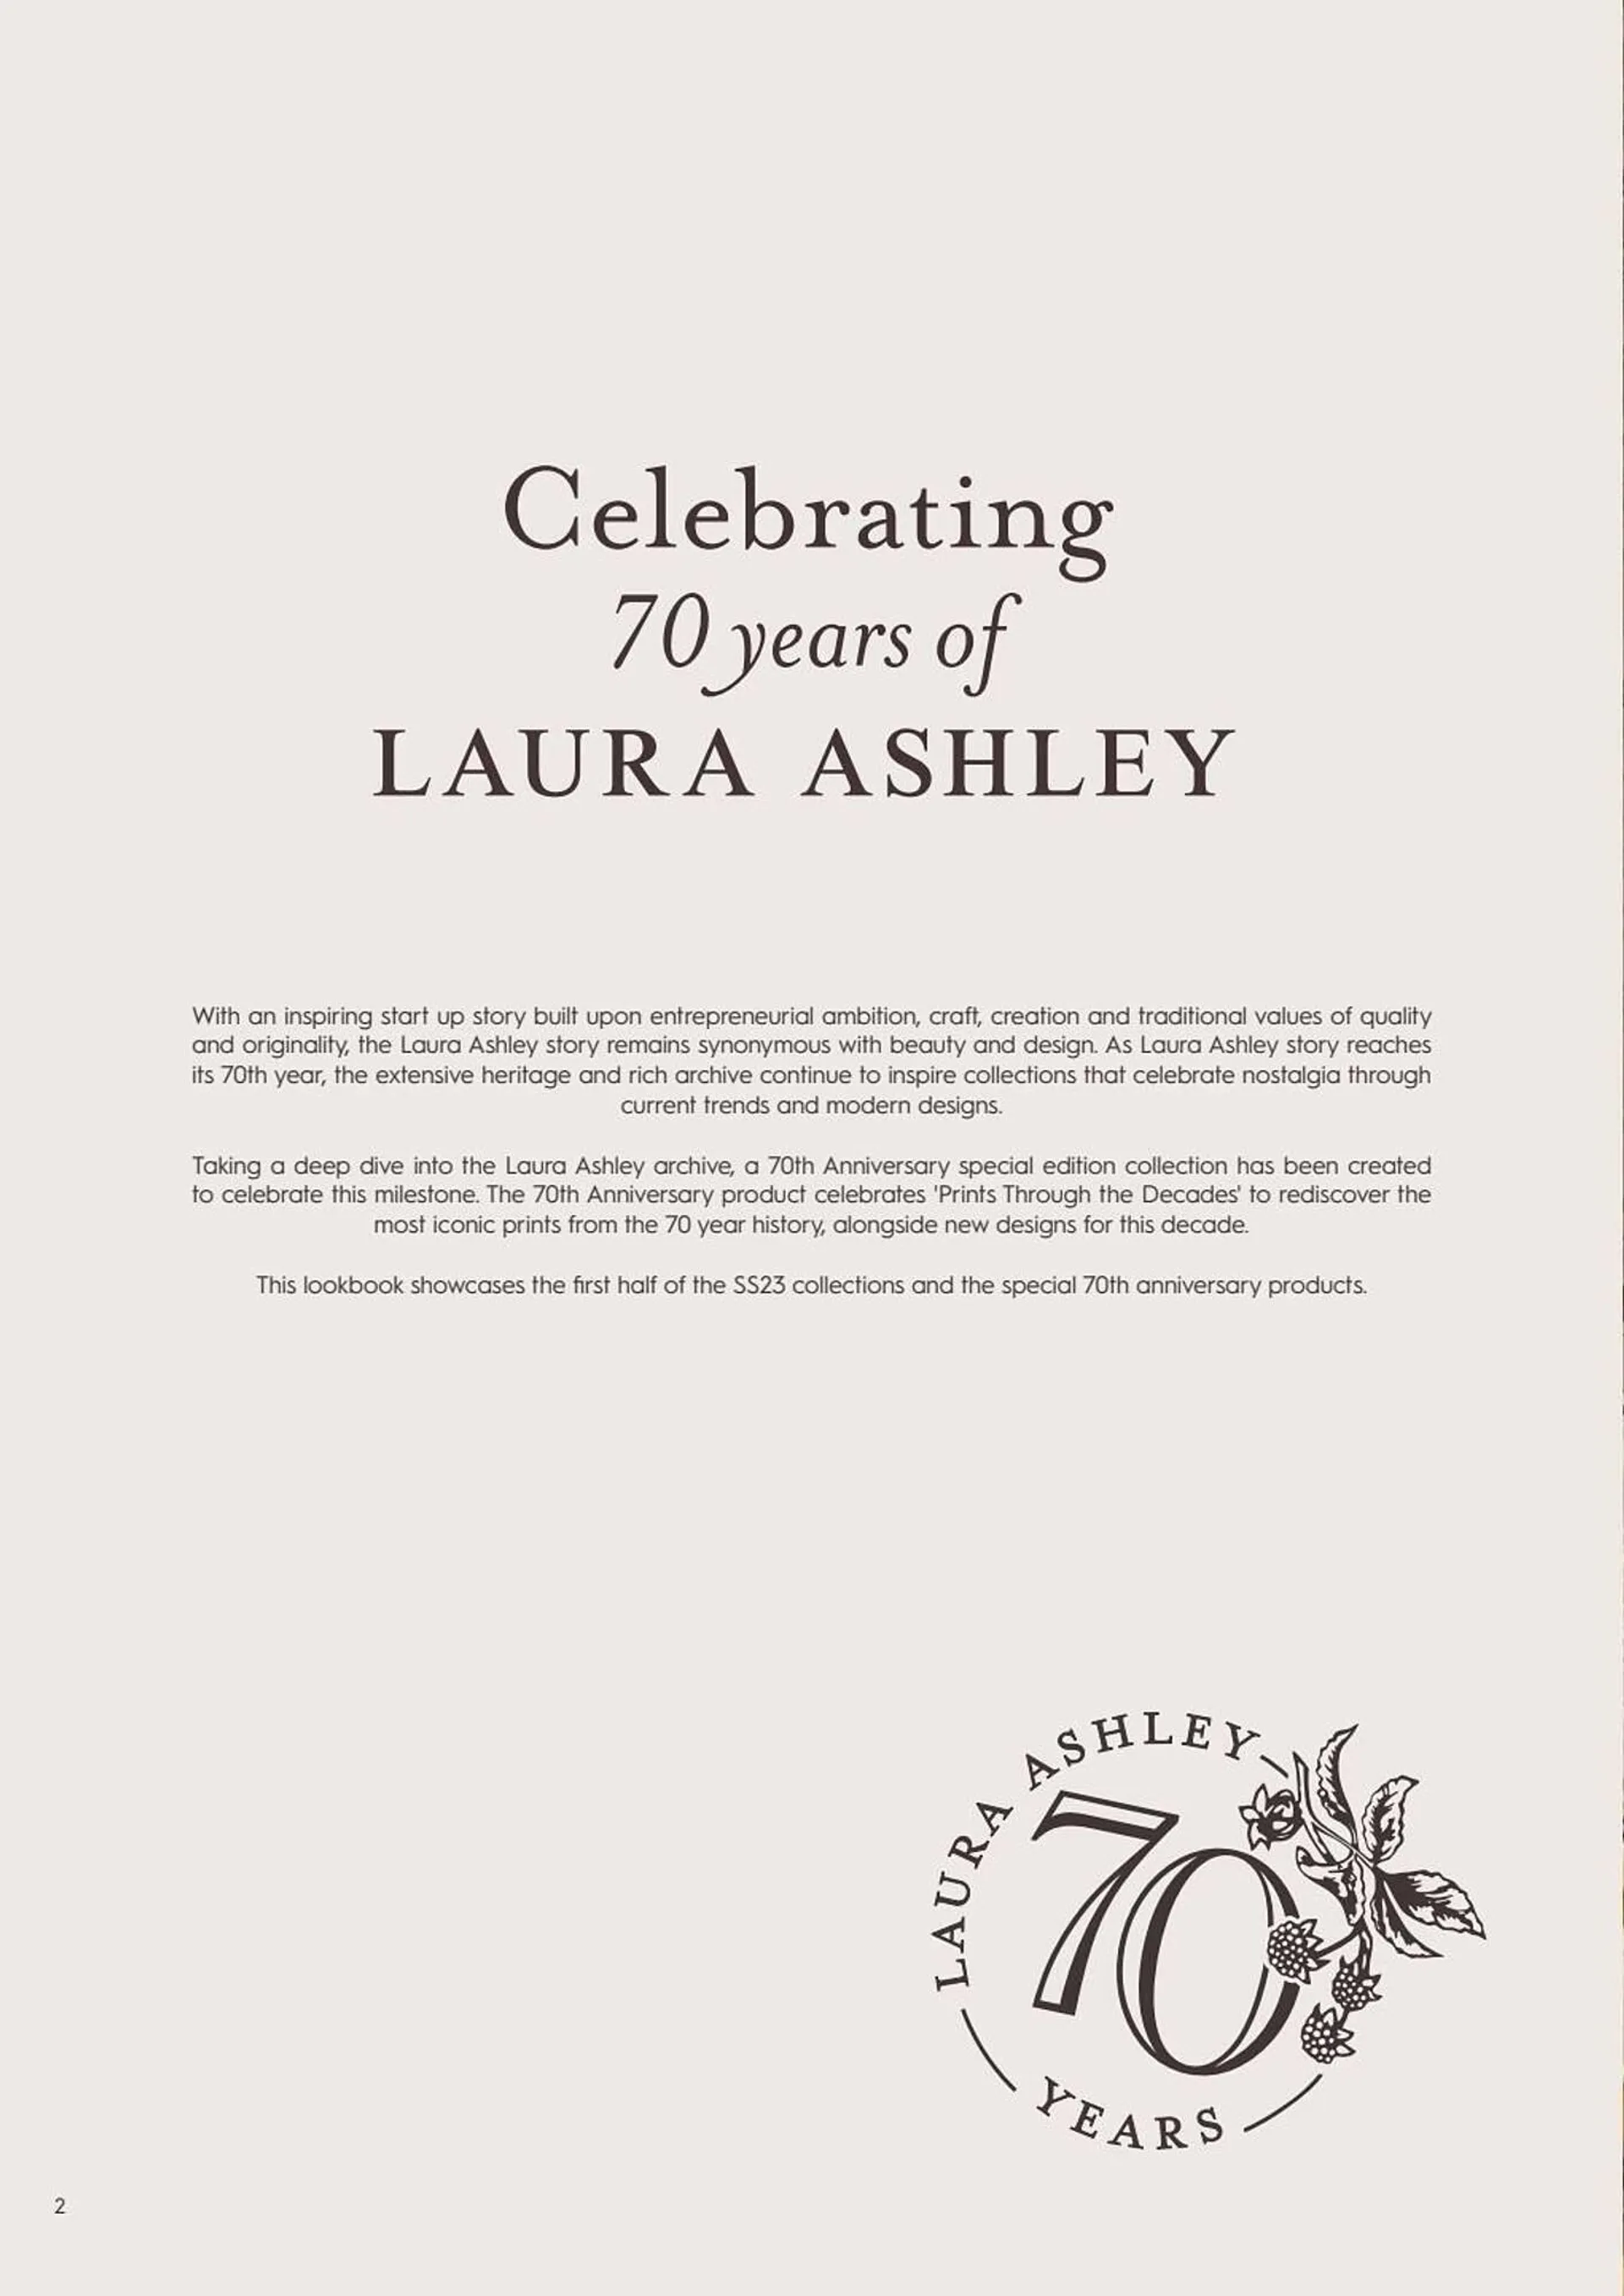 Laura Ashley leaflet - 2